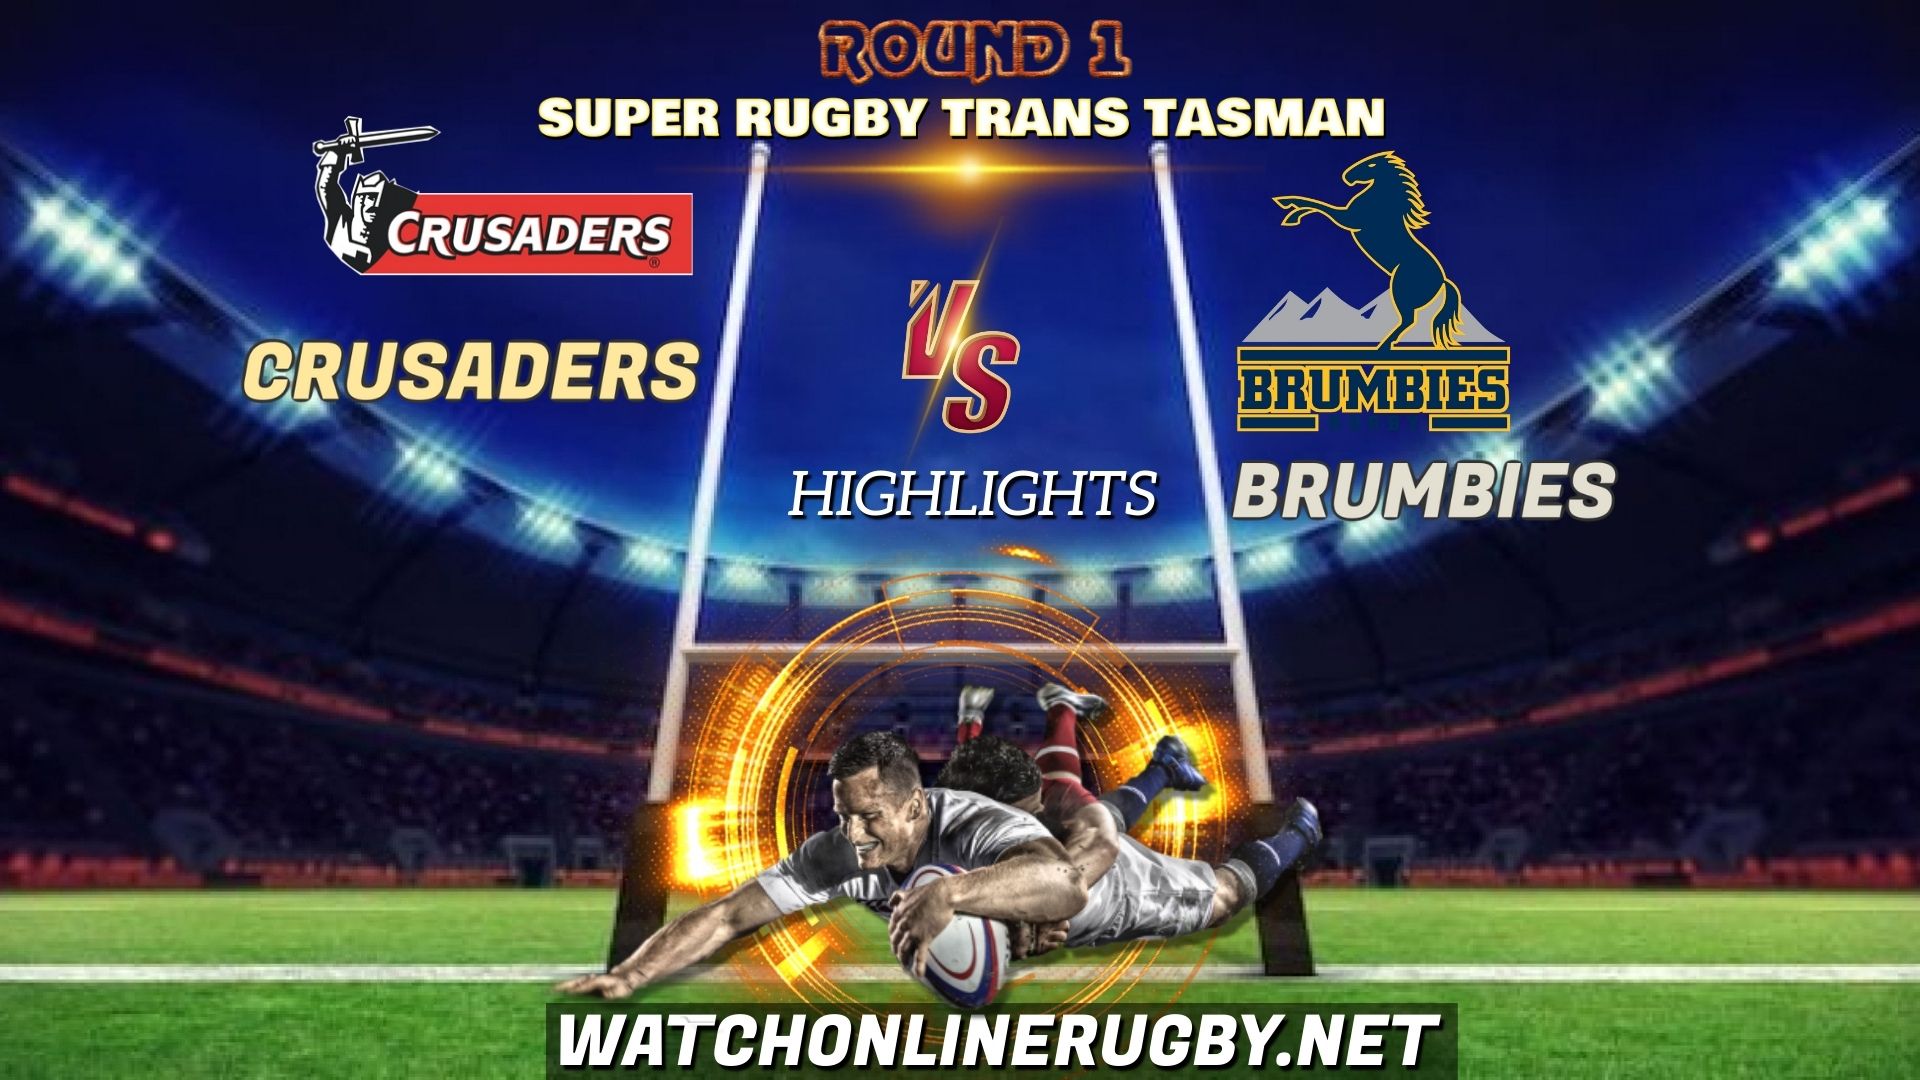 Crusaders Vs Brumbies Super Rugby Trans Tasman 2021 RD 1